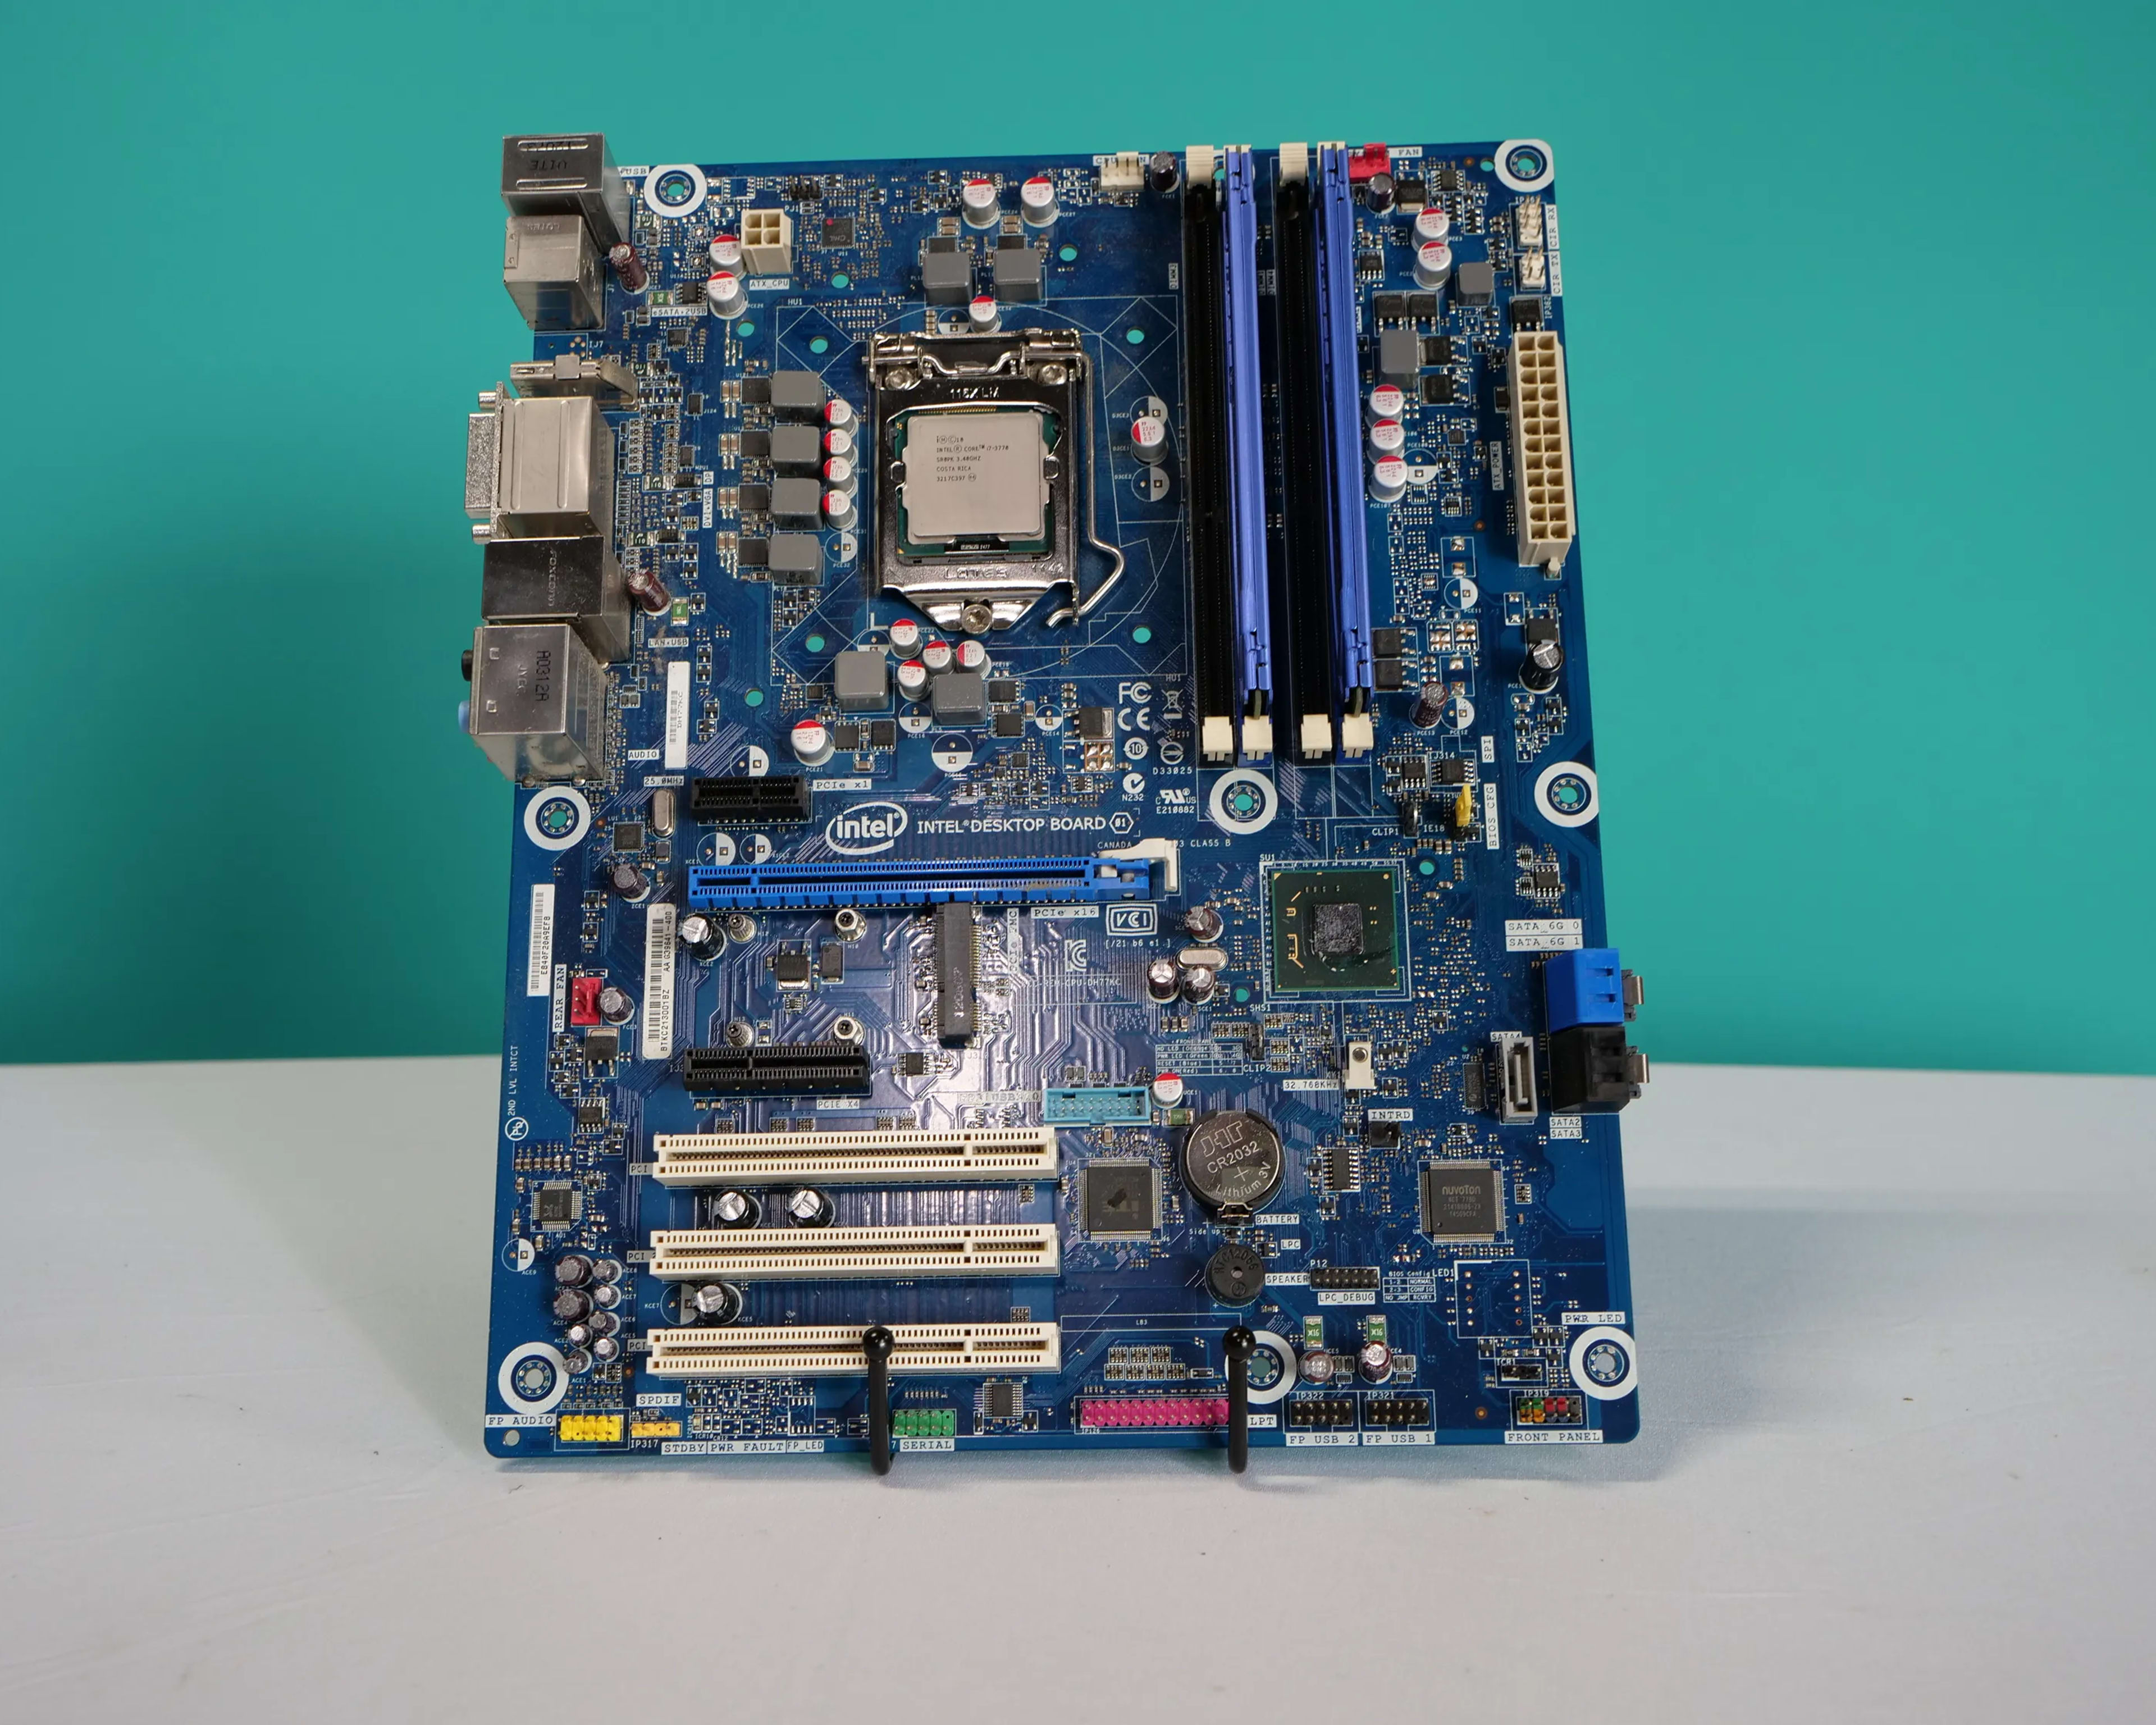 Intel Desktop Board Motherboard Kit With i7-3770 + 16gb RAM